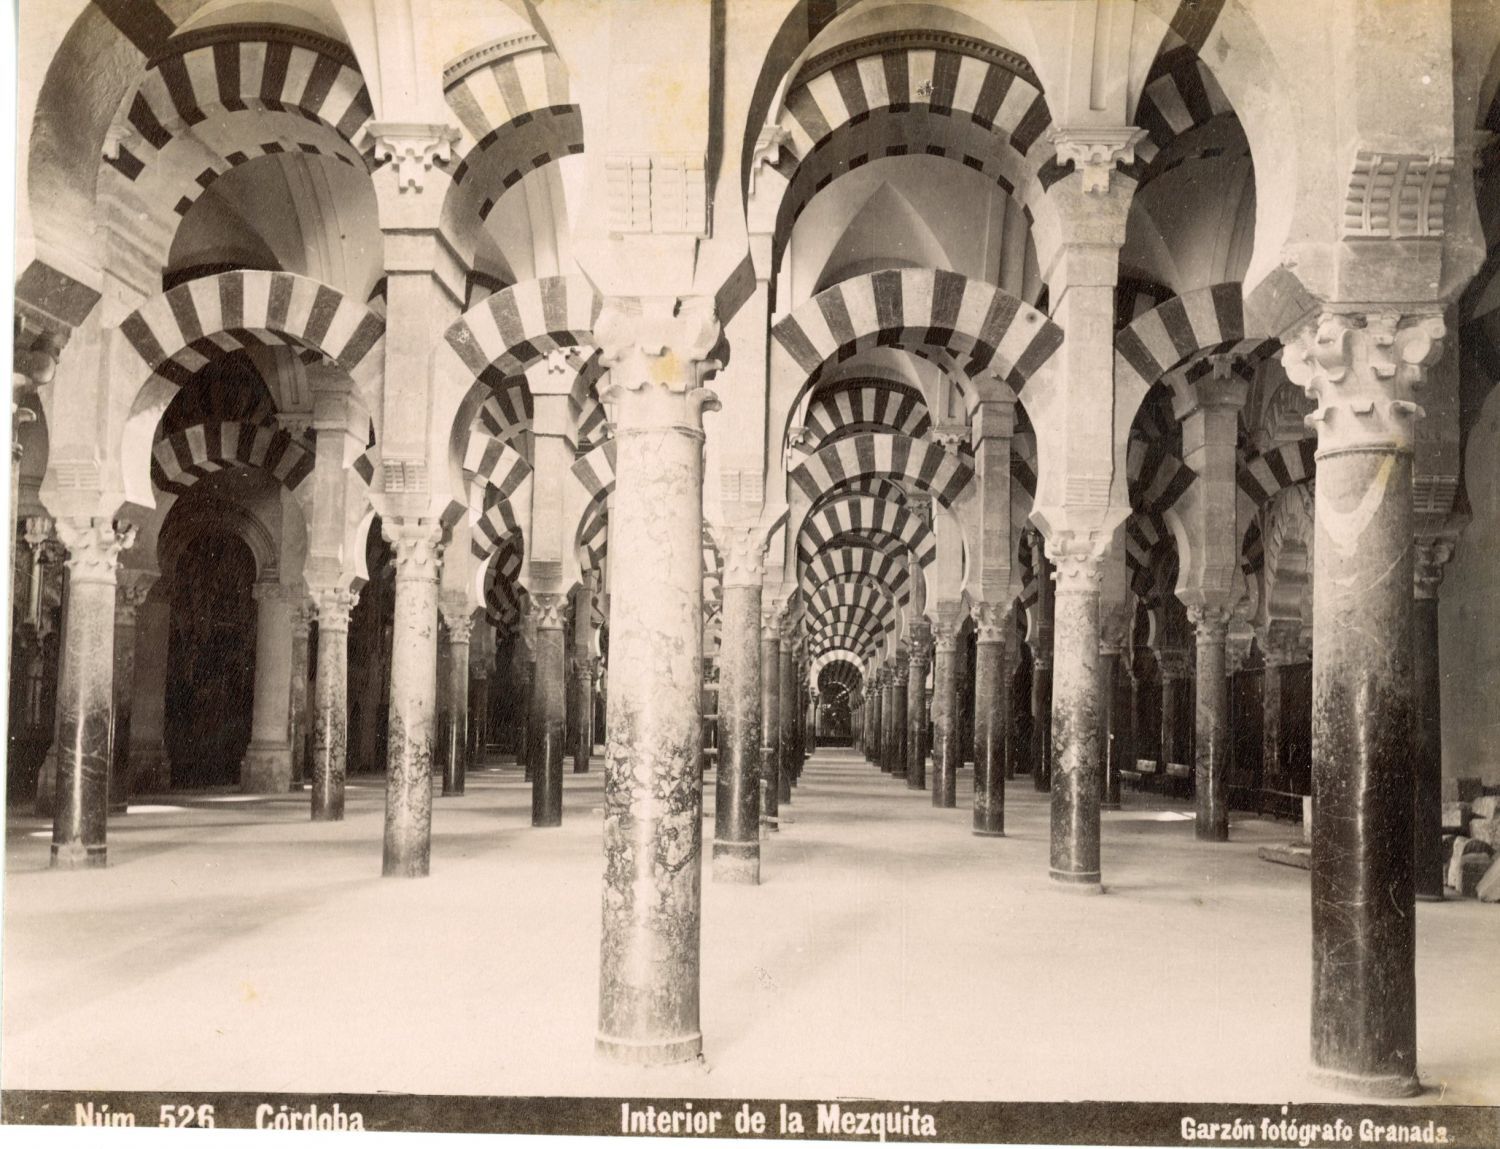 Garzón. Spain, Cordoba, Interior of the Mosque Vintage Albumen Print Tirag